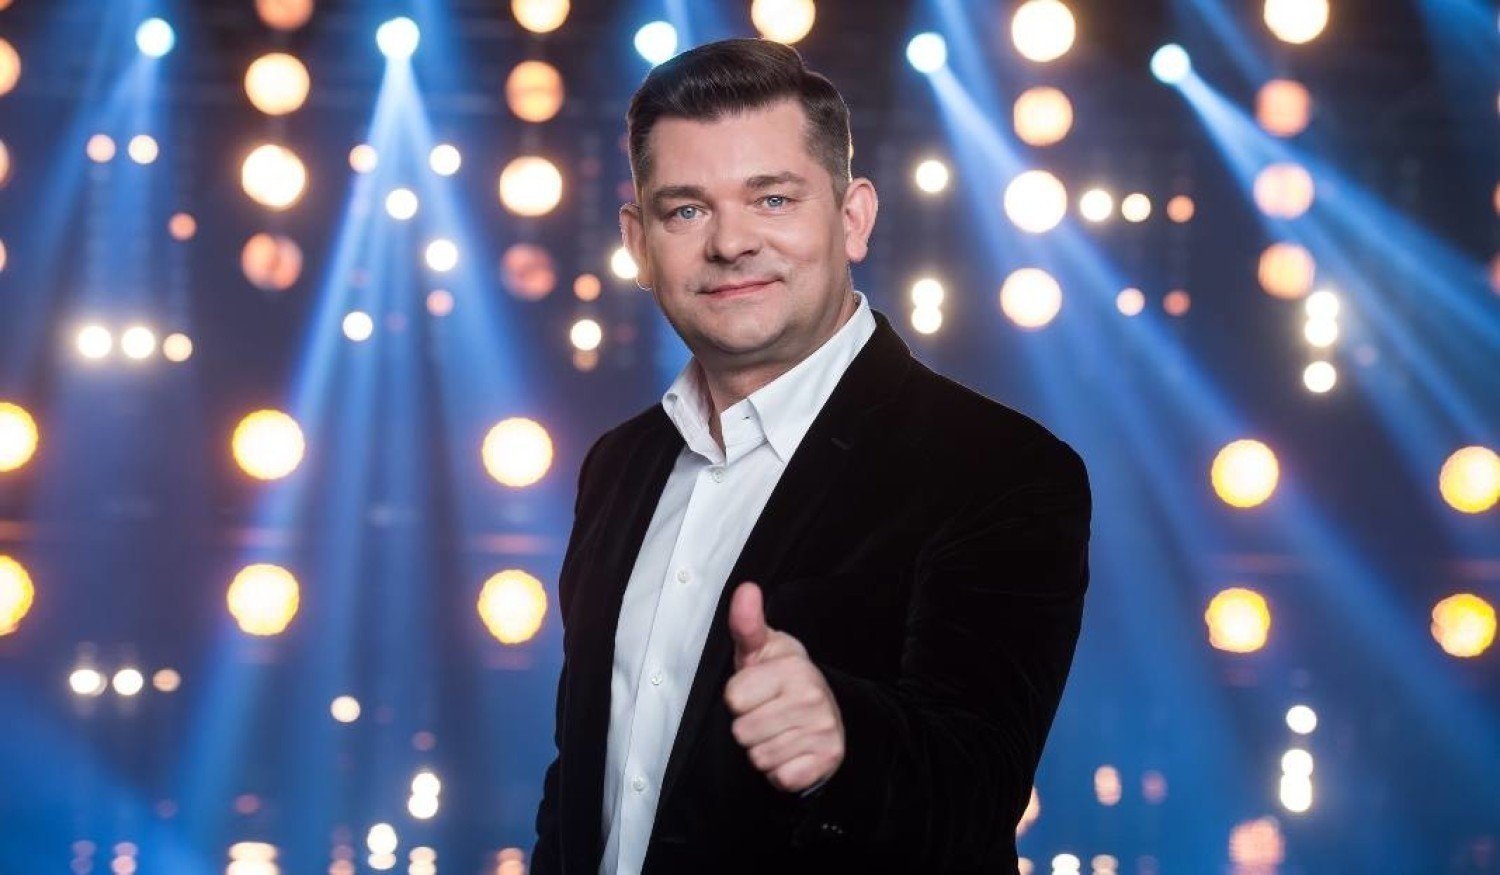 Zenon Martyniuk Akcent na Eurowizji 2023?! To wielka szansa dla Polski?!>
                        </a>
                        </div>
                        <div class=